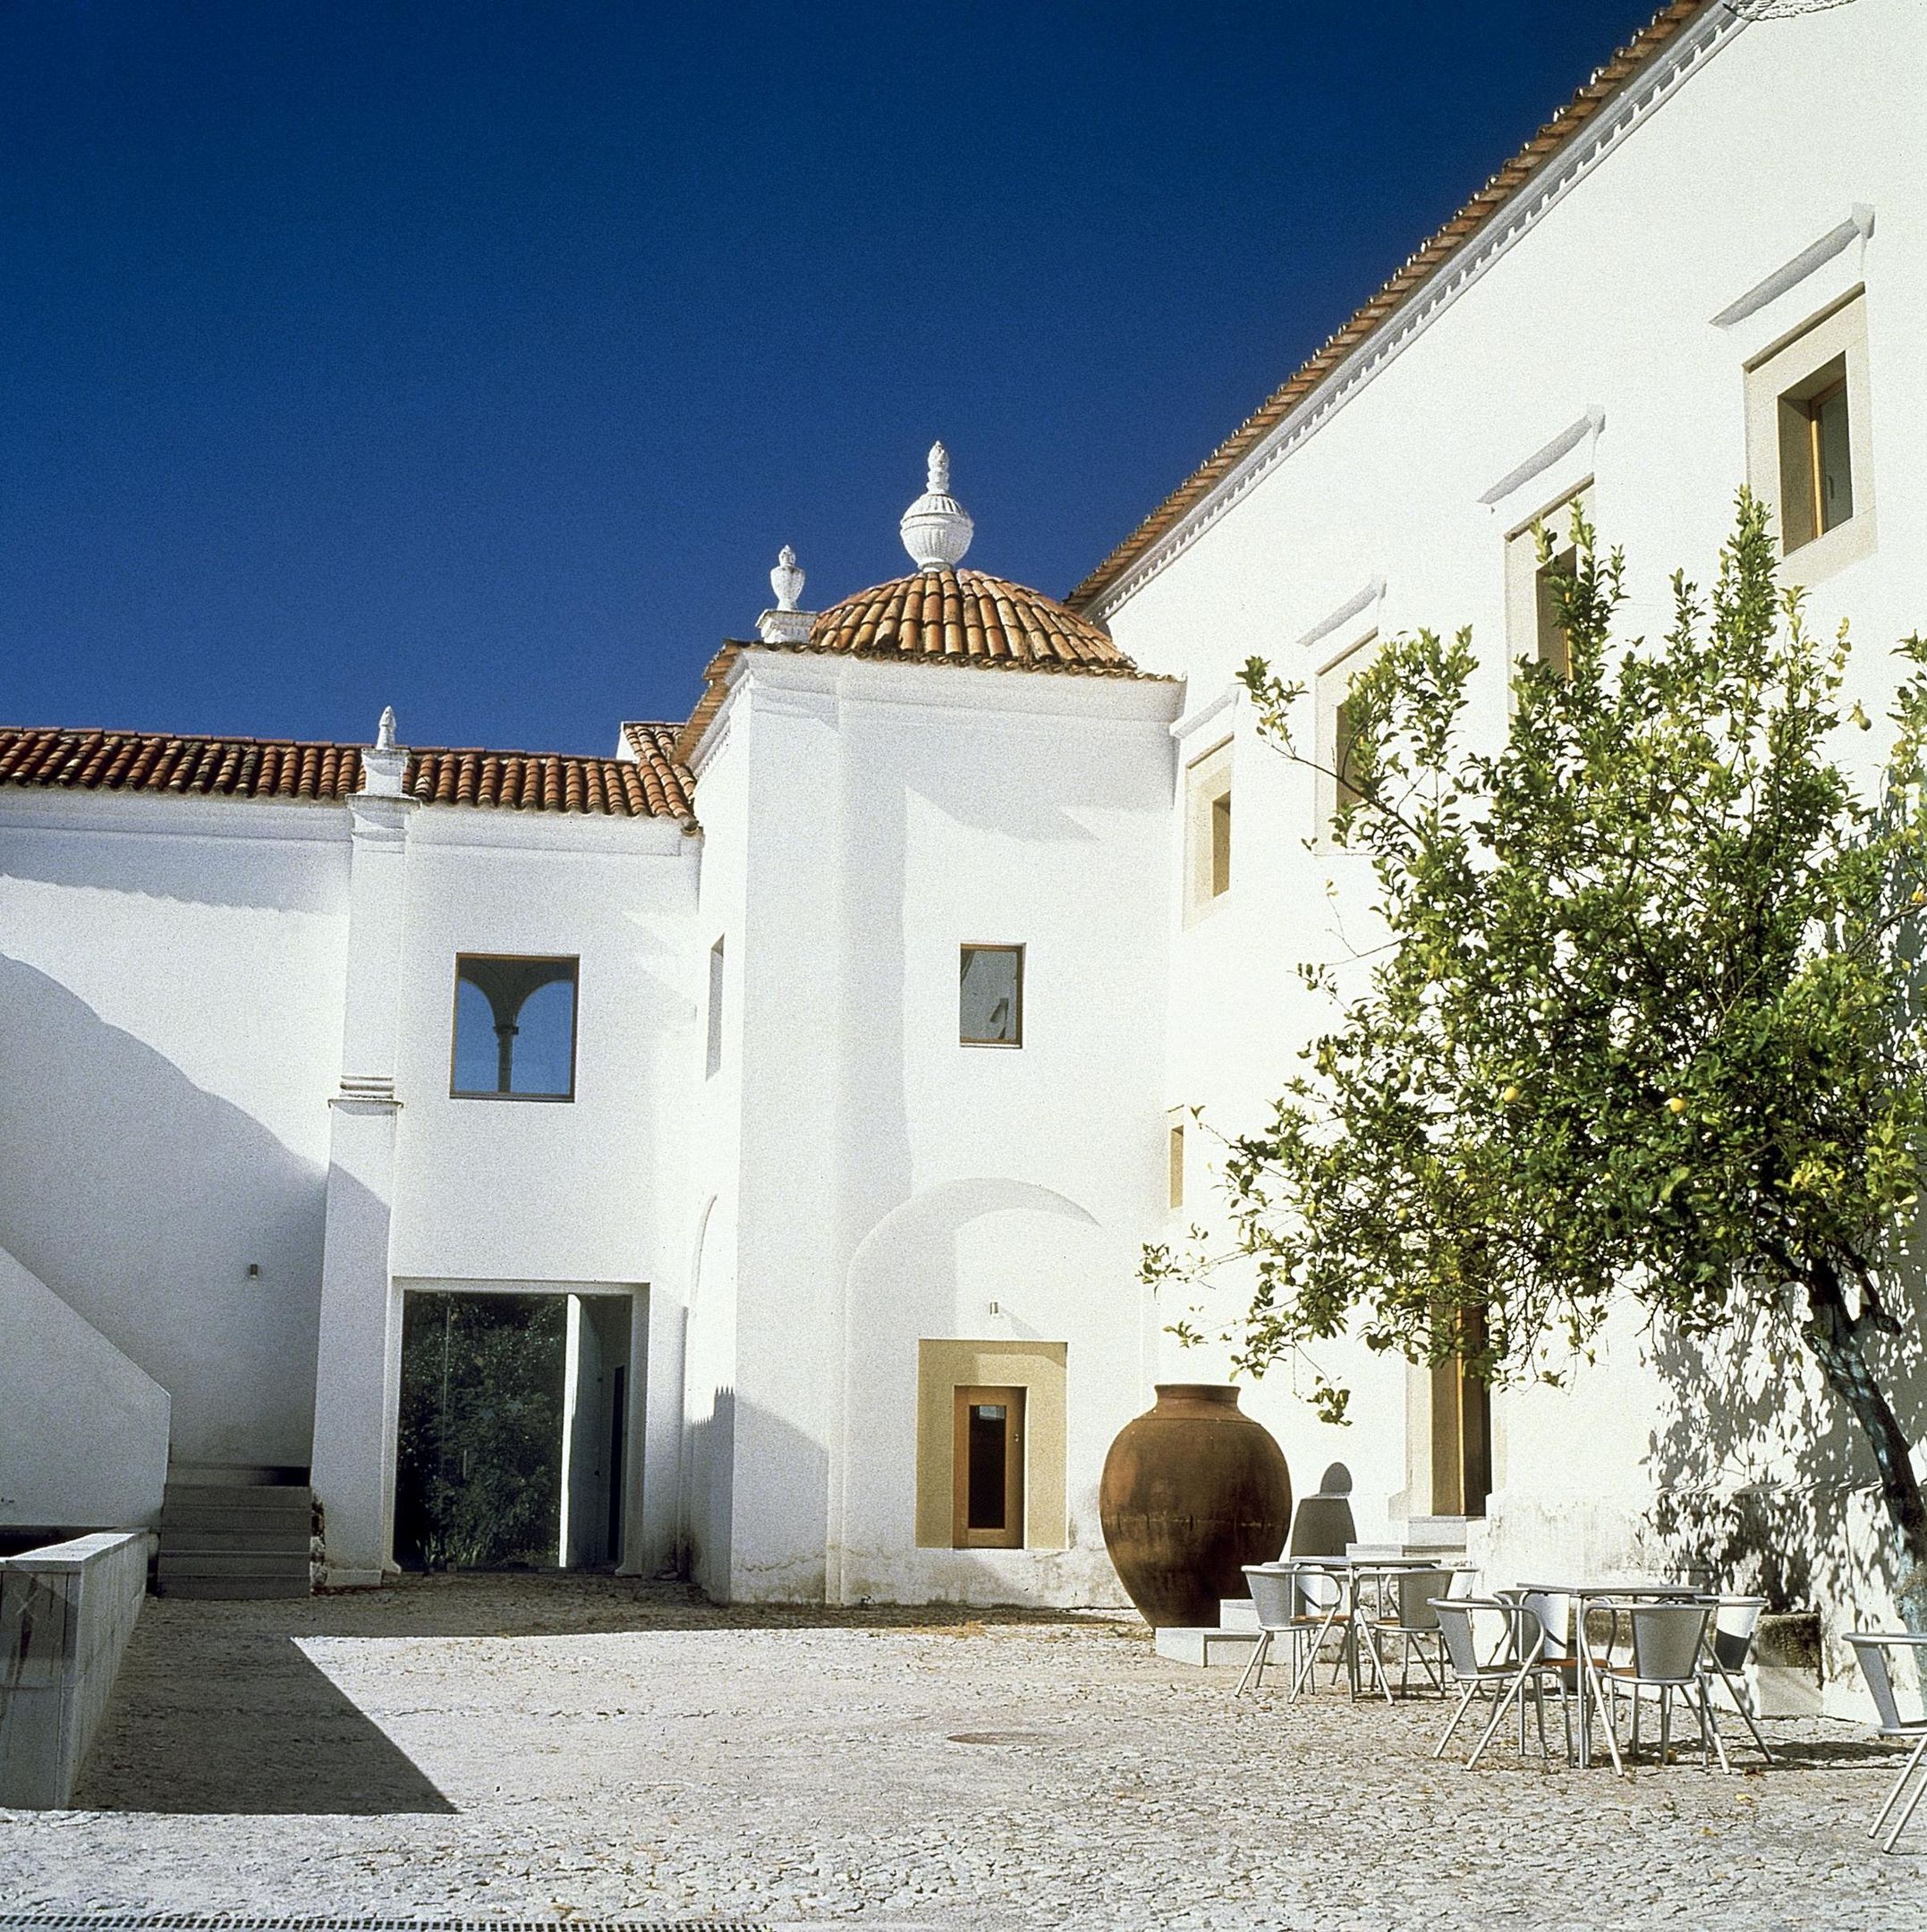 Pousada Convento Arraiolos - Historic Hotel, Arraiolos, Alentejo, Portugal